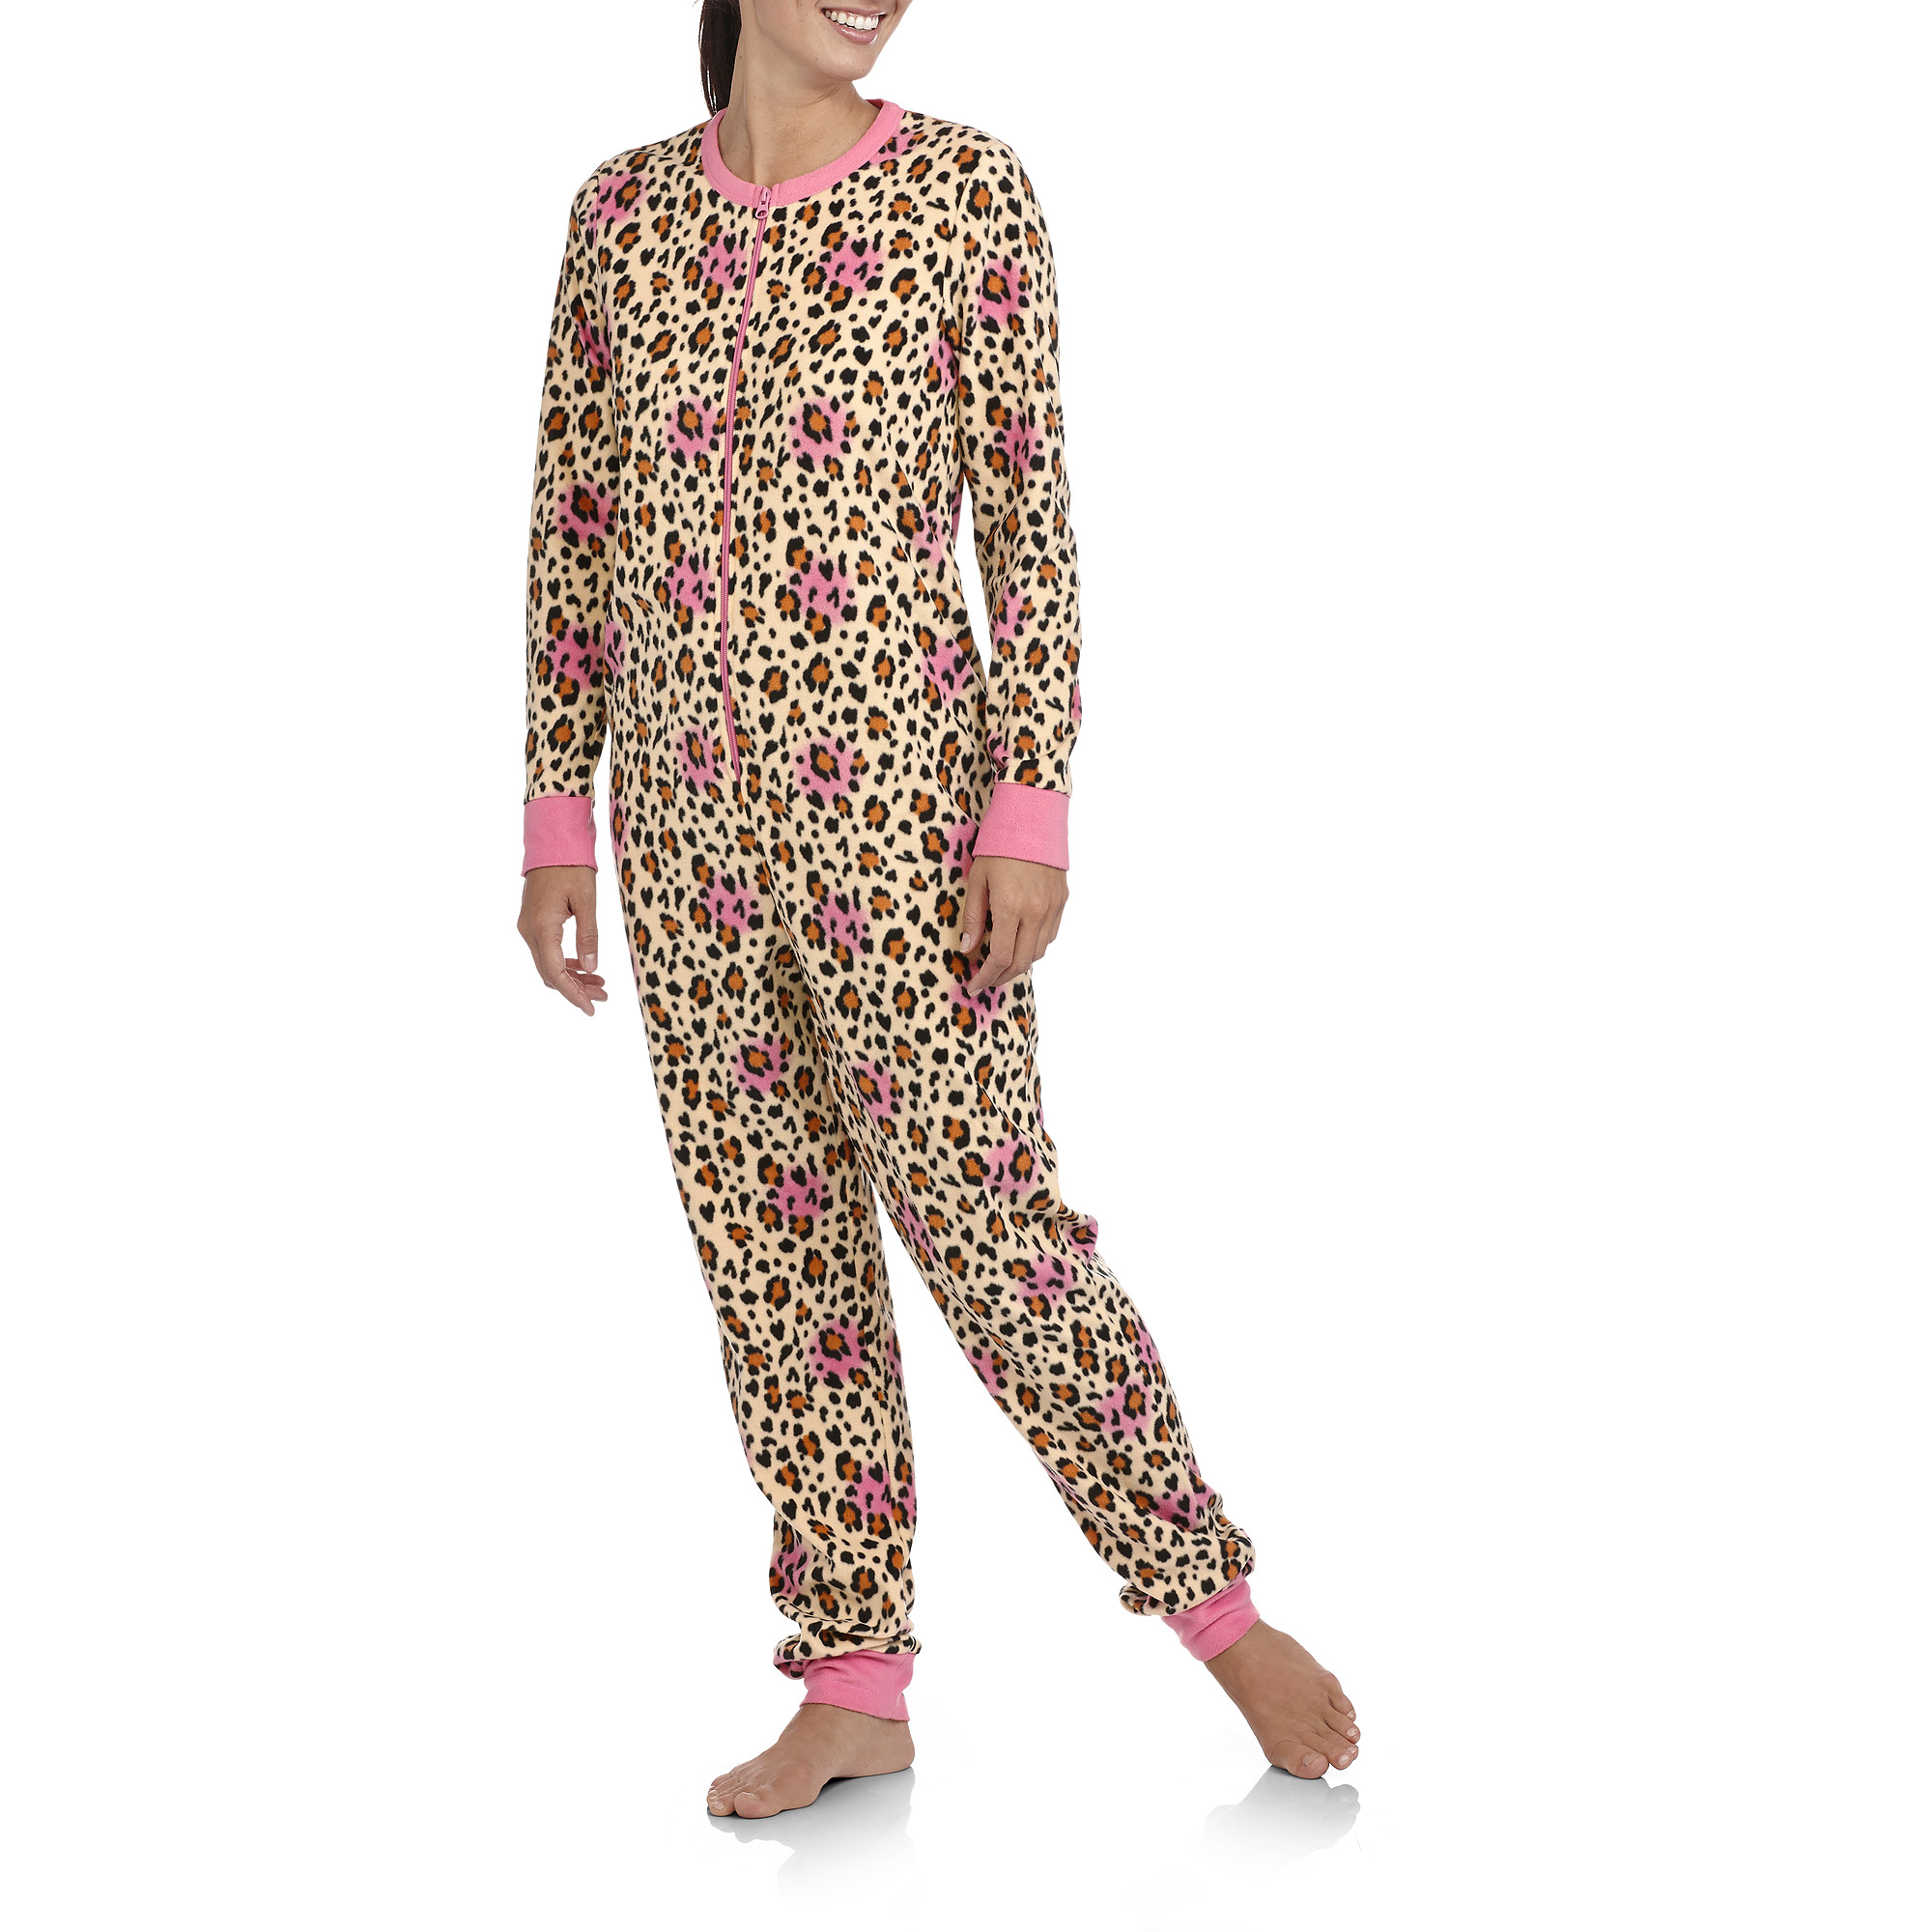 Women's Micro Fleece One-Piece Pajamas - image 1 of 2